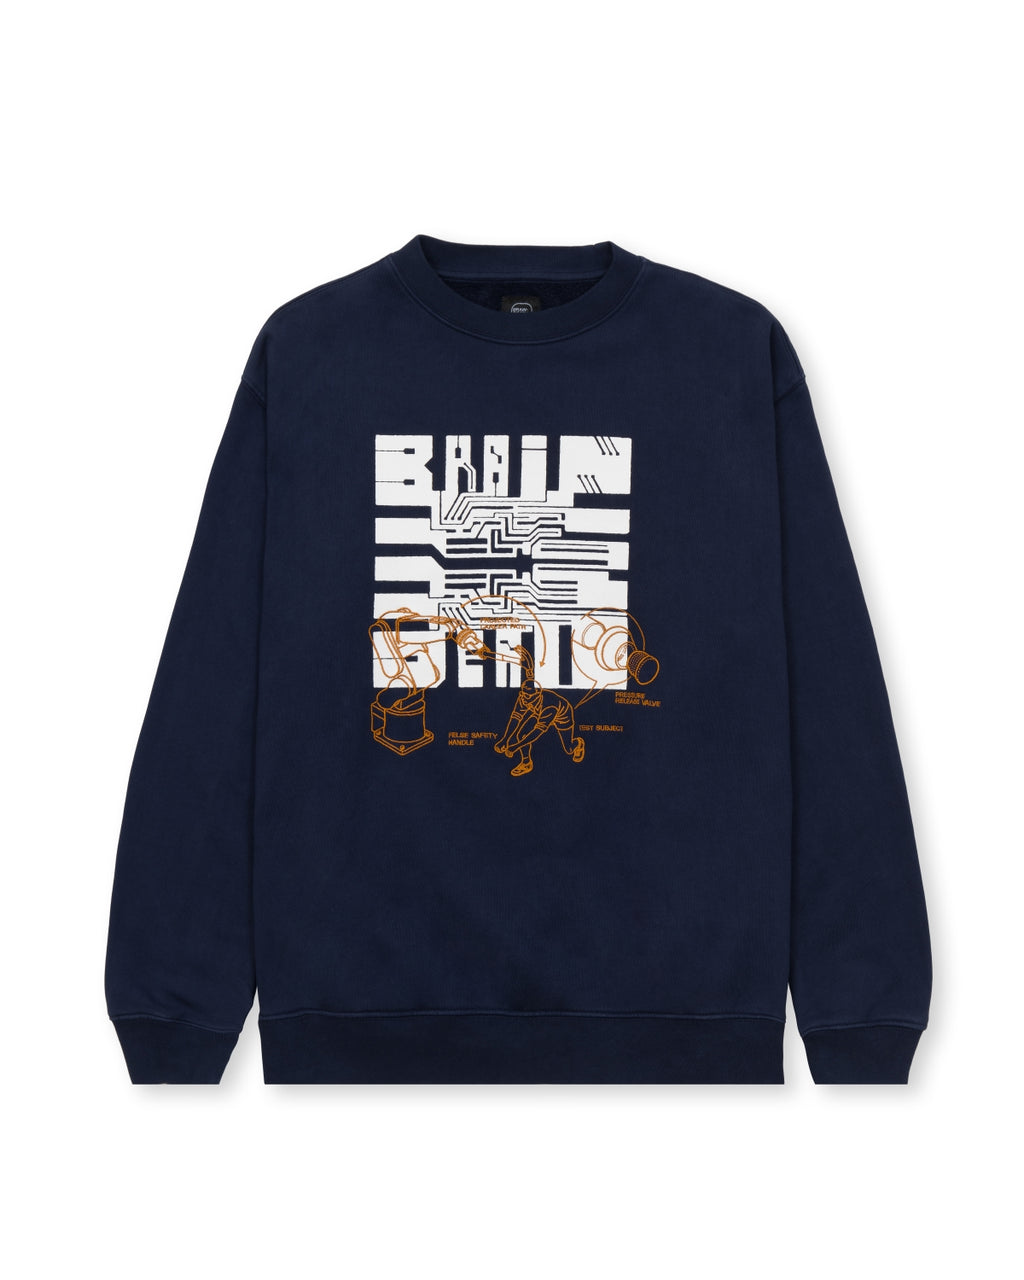 Tutorials Crewneck Sweatshirt - Navy 1